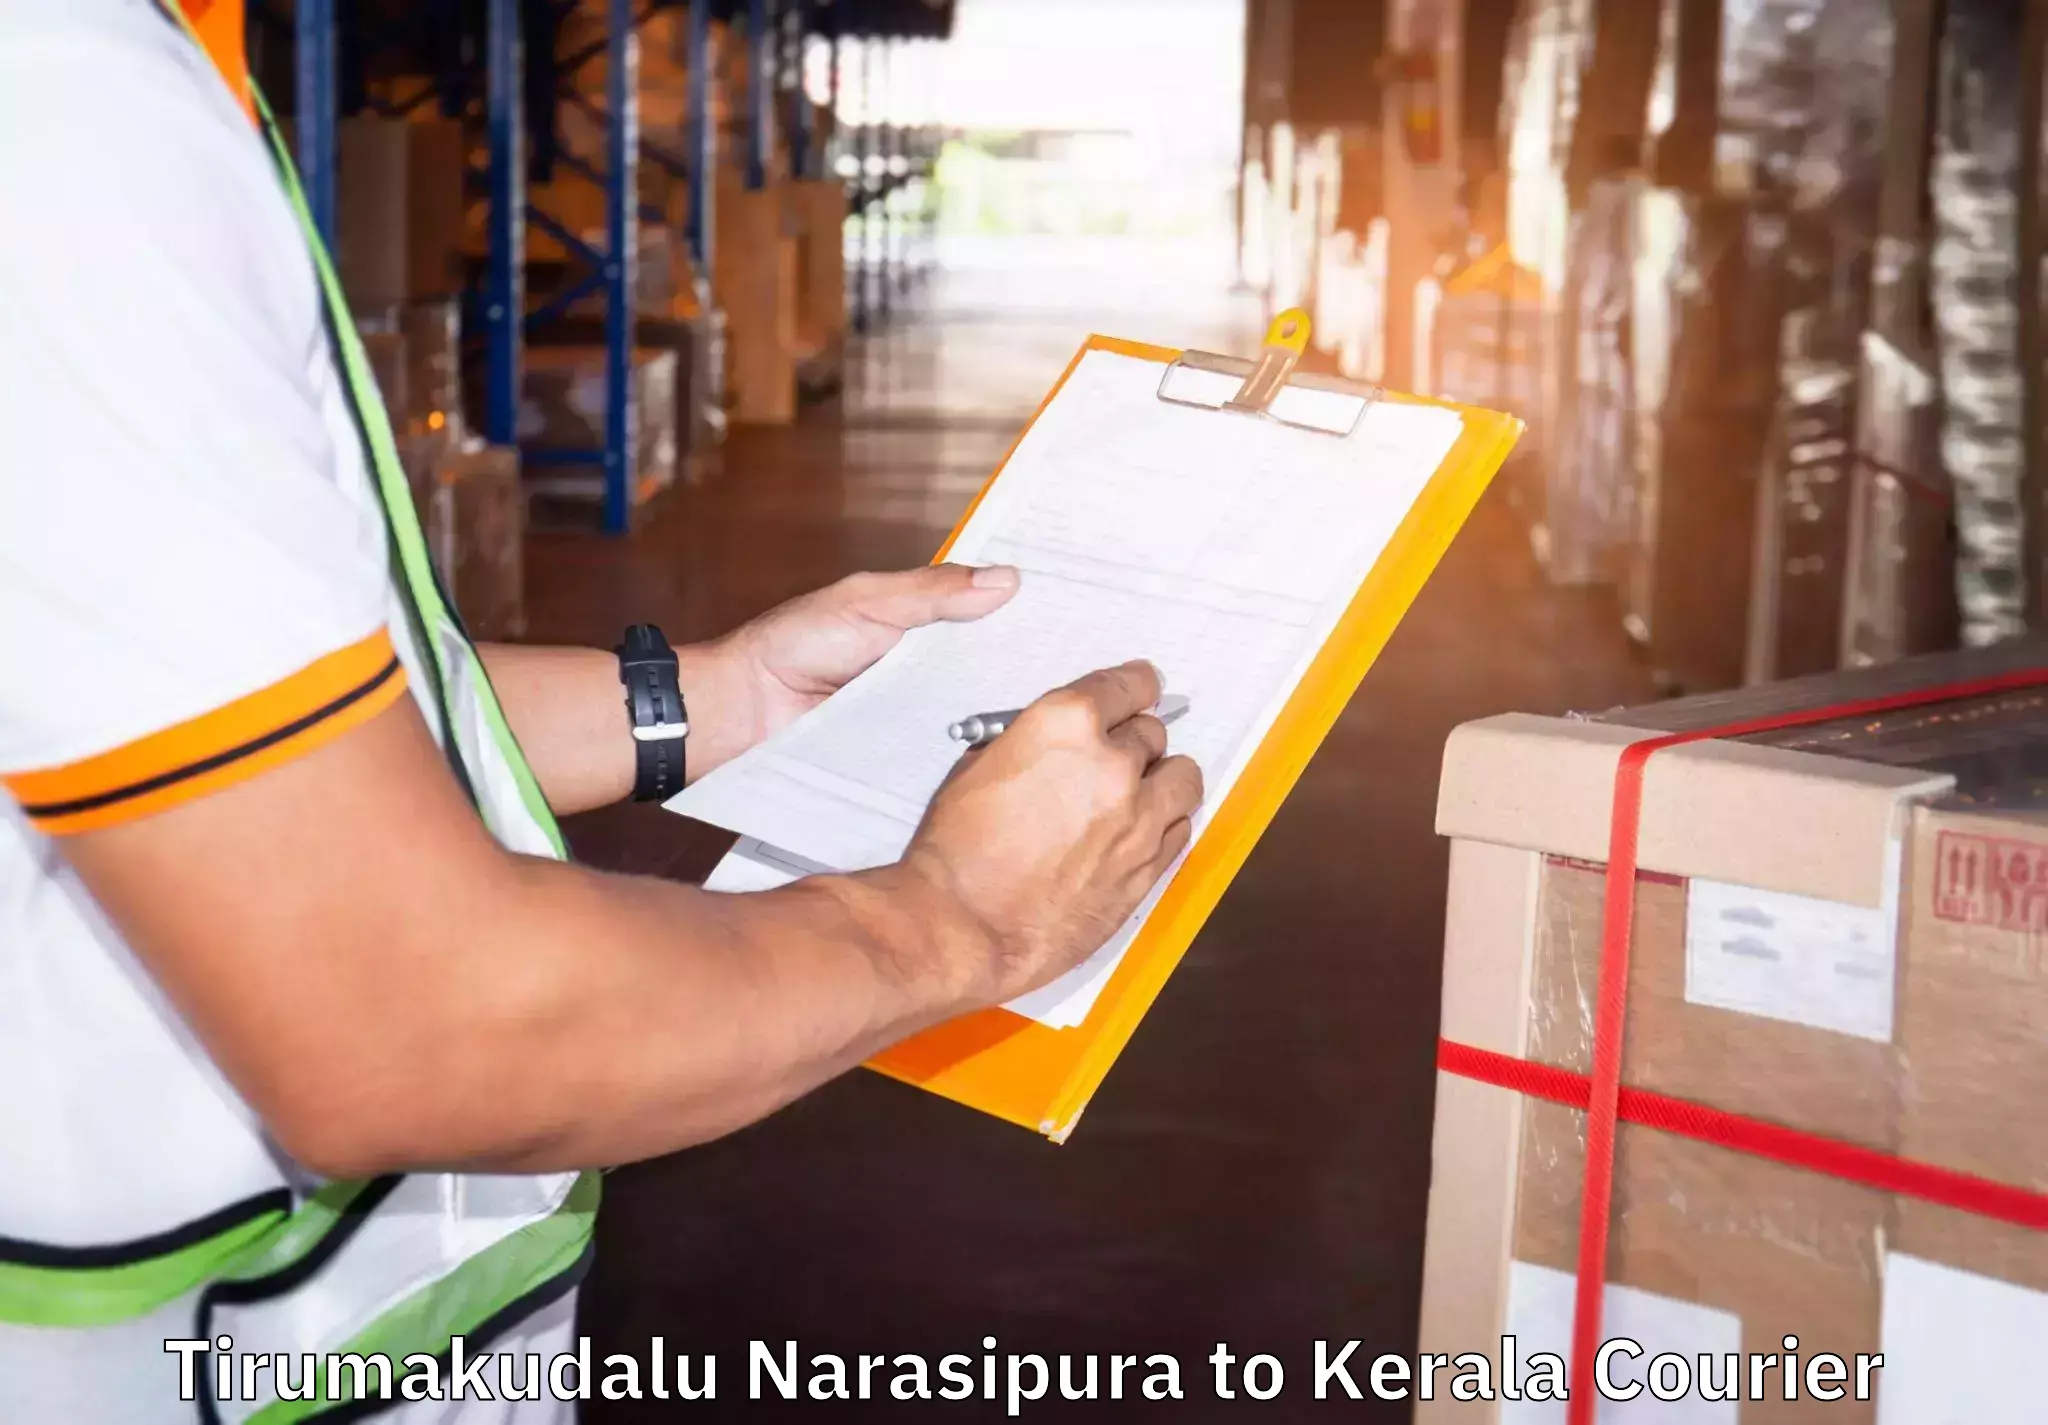 Furniture relocation experts Tirumakudalu Narasipura to Kozhikode